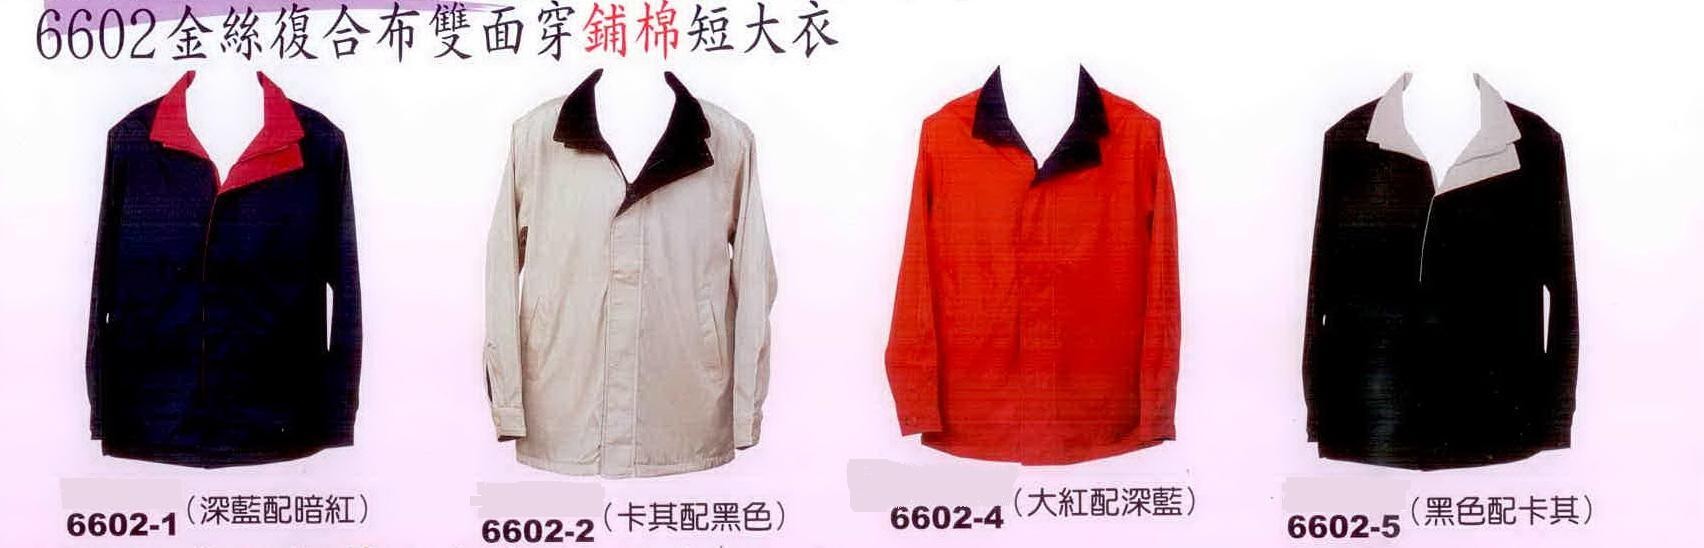 雙面穿鋪棉短大衣:深藍/暗紅6602-1、卡其/黑色6602-2、大紅/深藍6602-4 、黑色/卡其6602-5